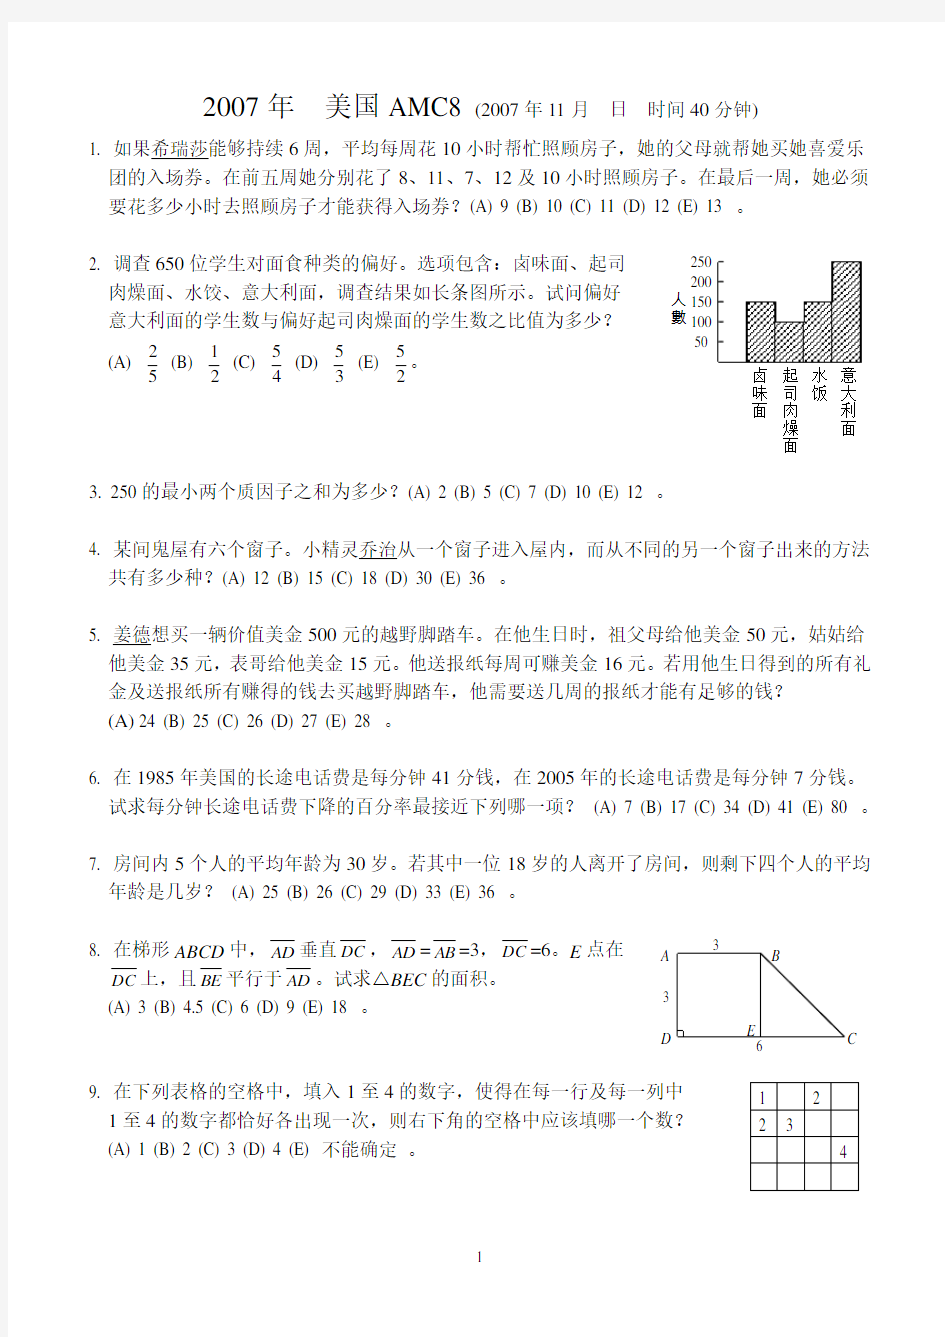 2007-2012 AMC8 中文试题和答案